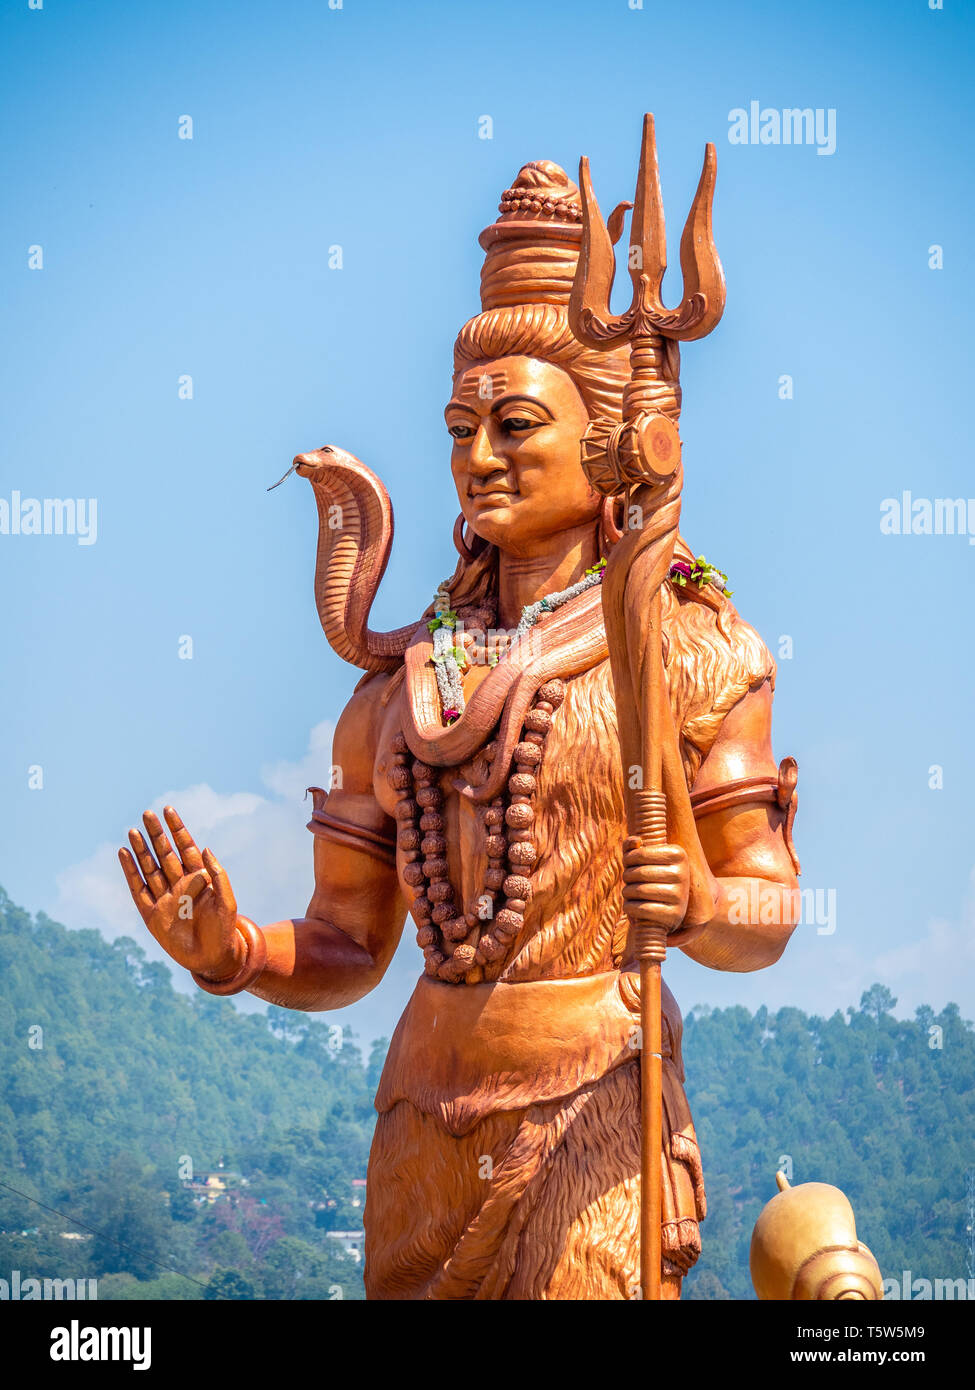 Enorme statua del signore Shiva o Mahadeva il grande dio indù al tempio Bagnath Bageshwar alla confluenza del Saryu e Gomati fiumi in India del Nord Foto Stock